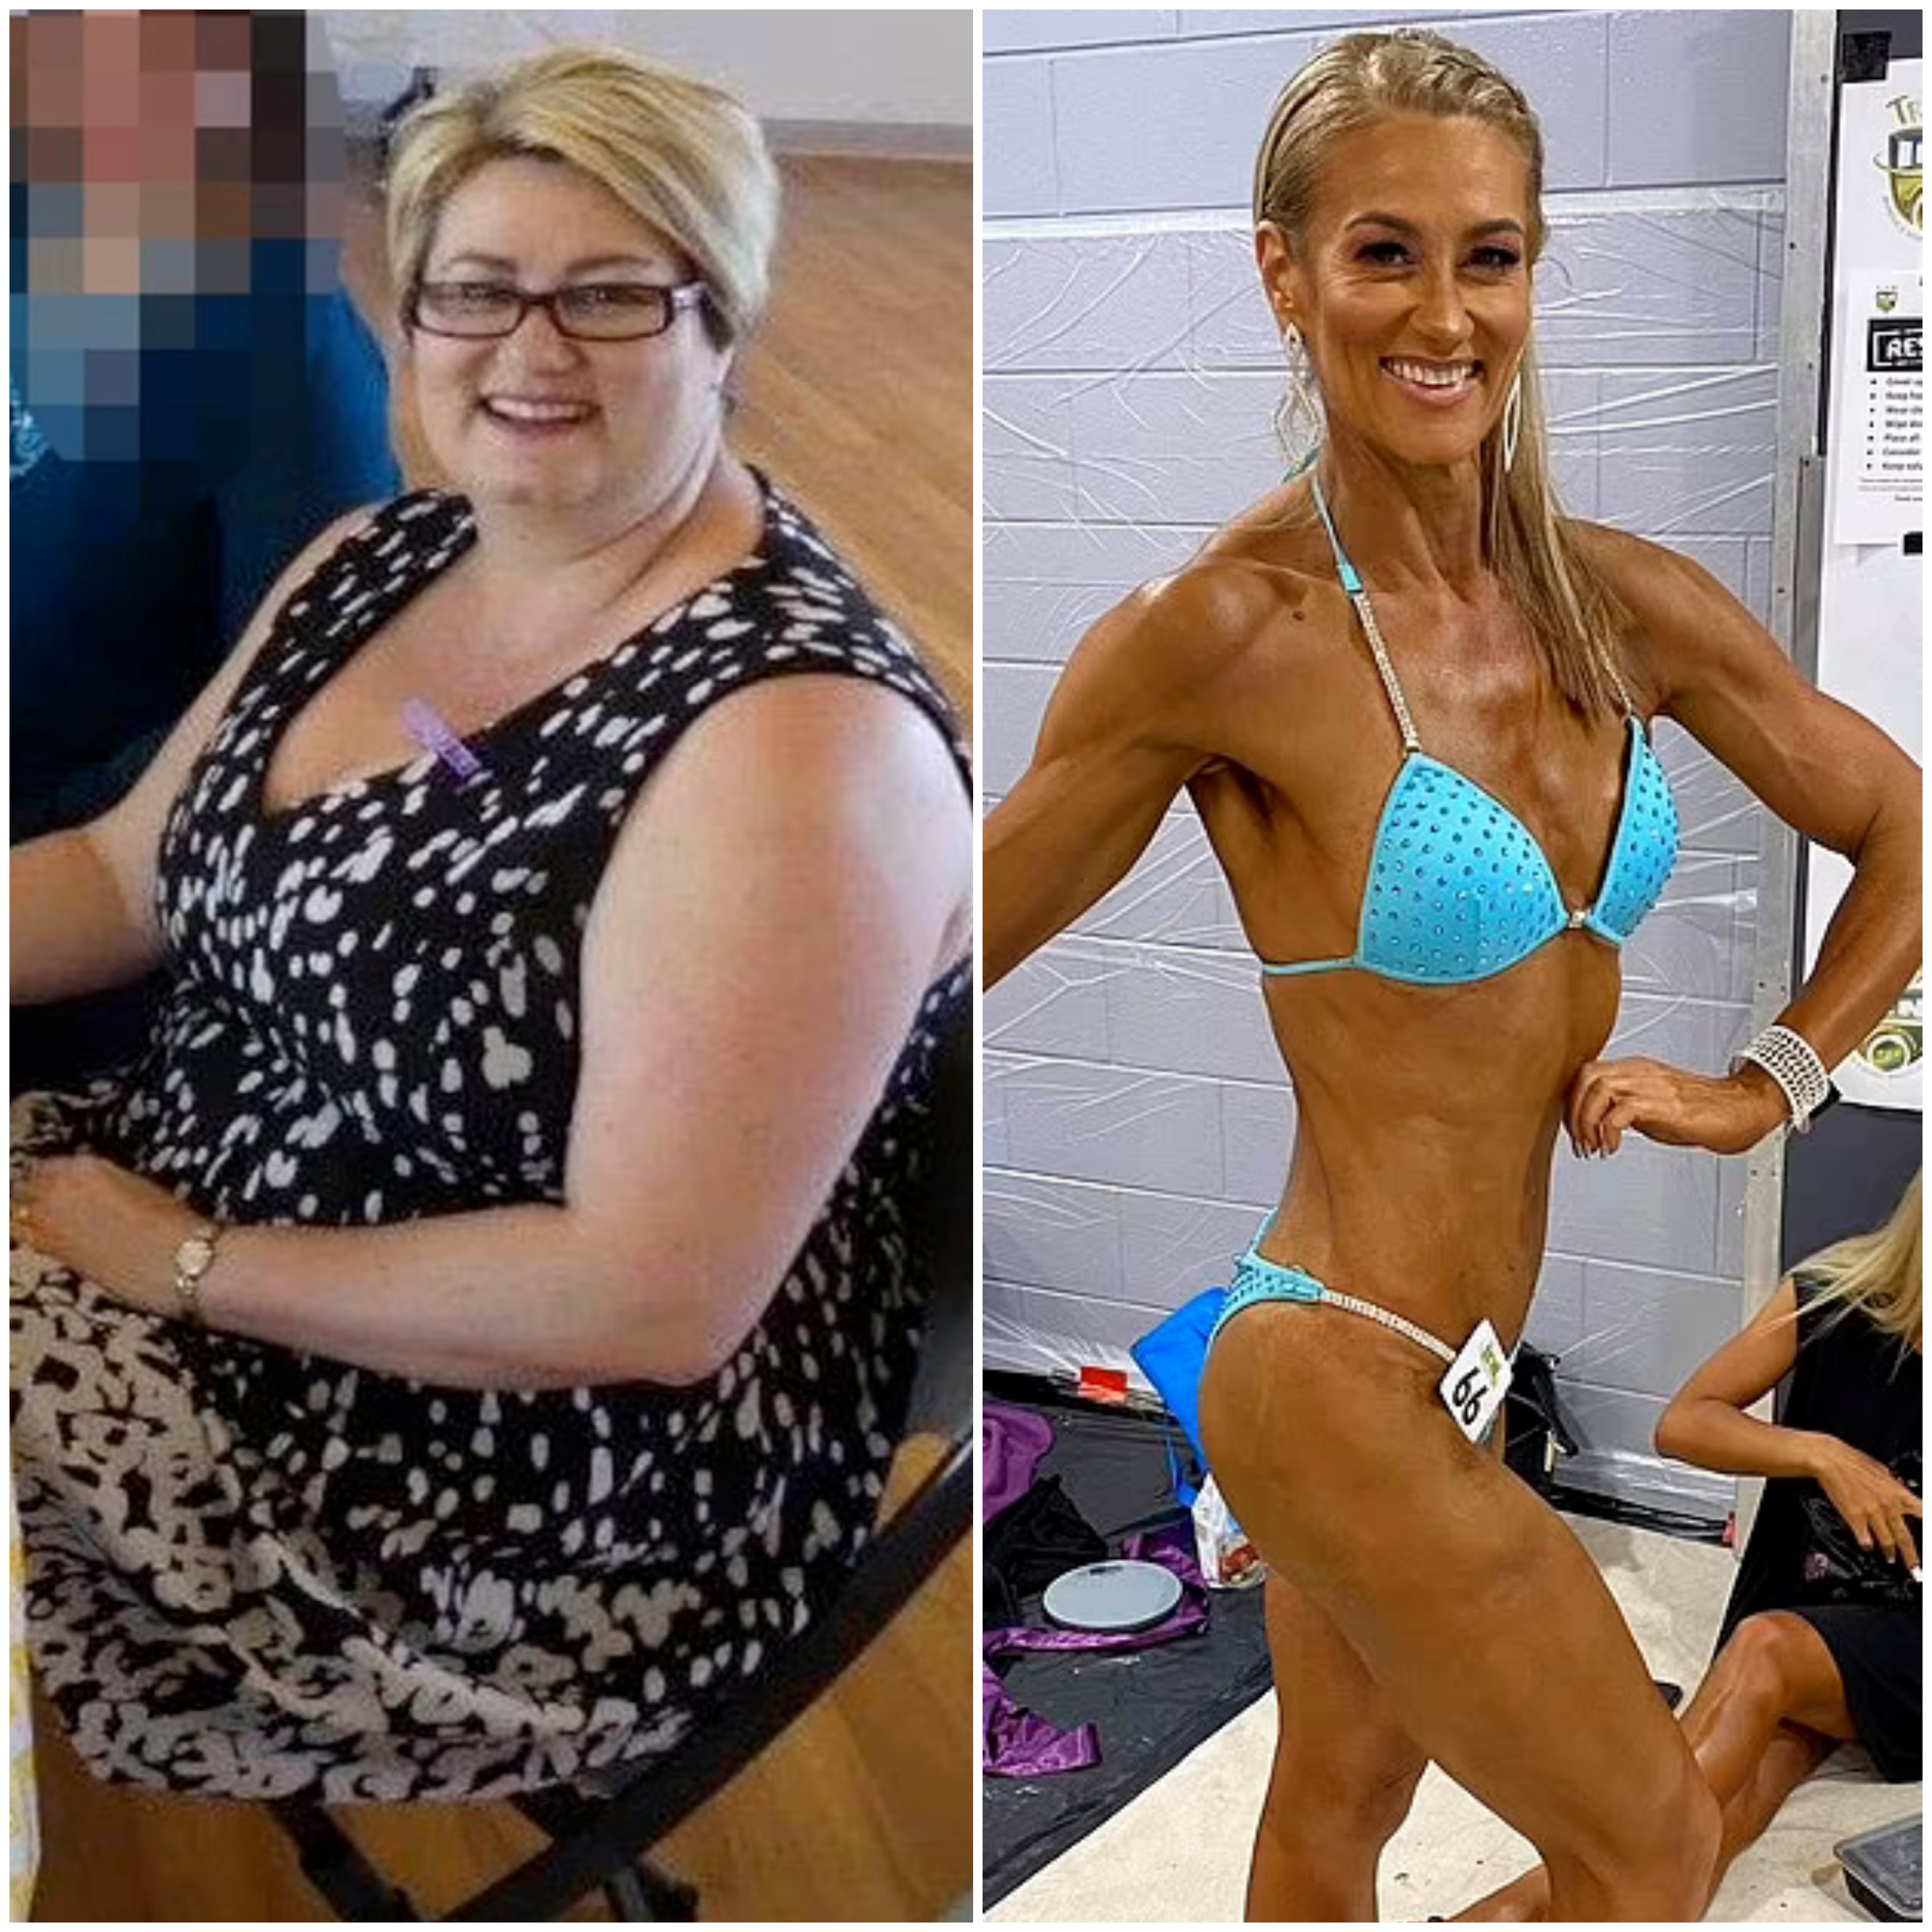 A australiana afirma que o segredo para a perda de peso foi mudar aos poucos a rotina ao invés de uma mudança de hábito abrupta (Foto: Arquivo pessoal)